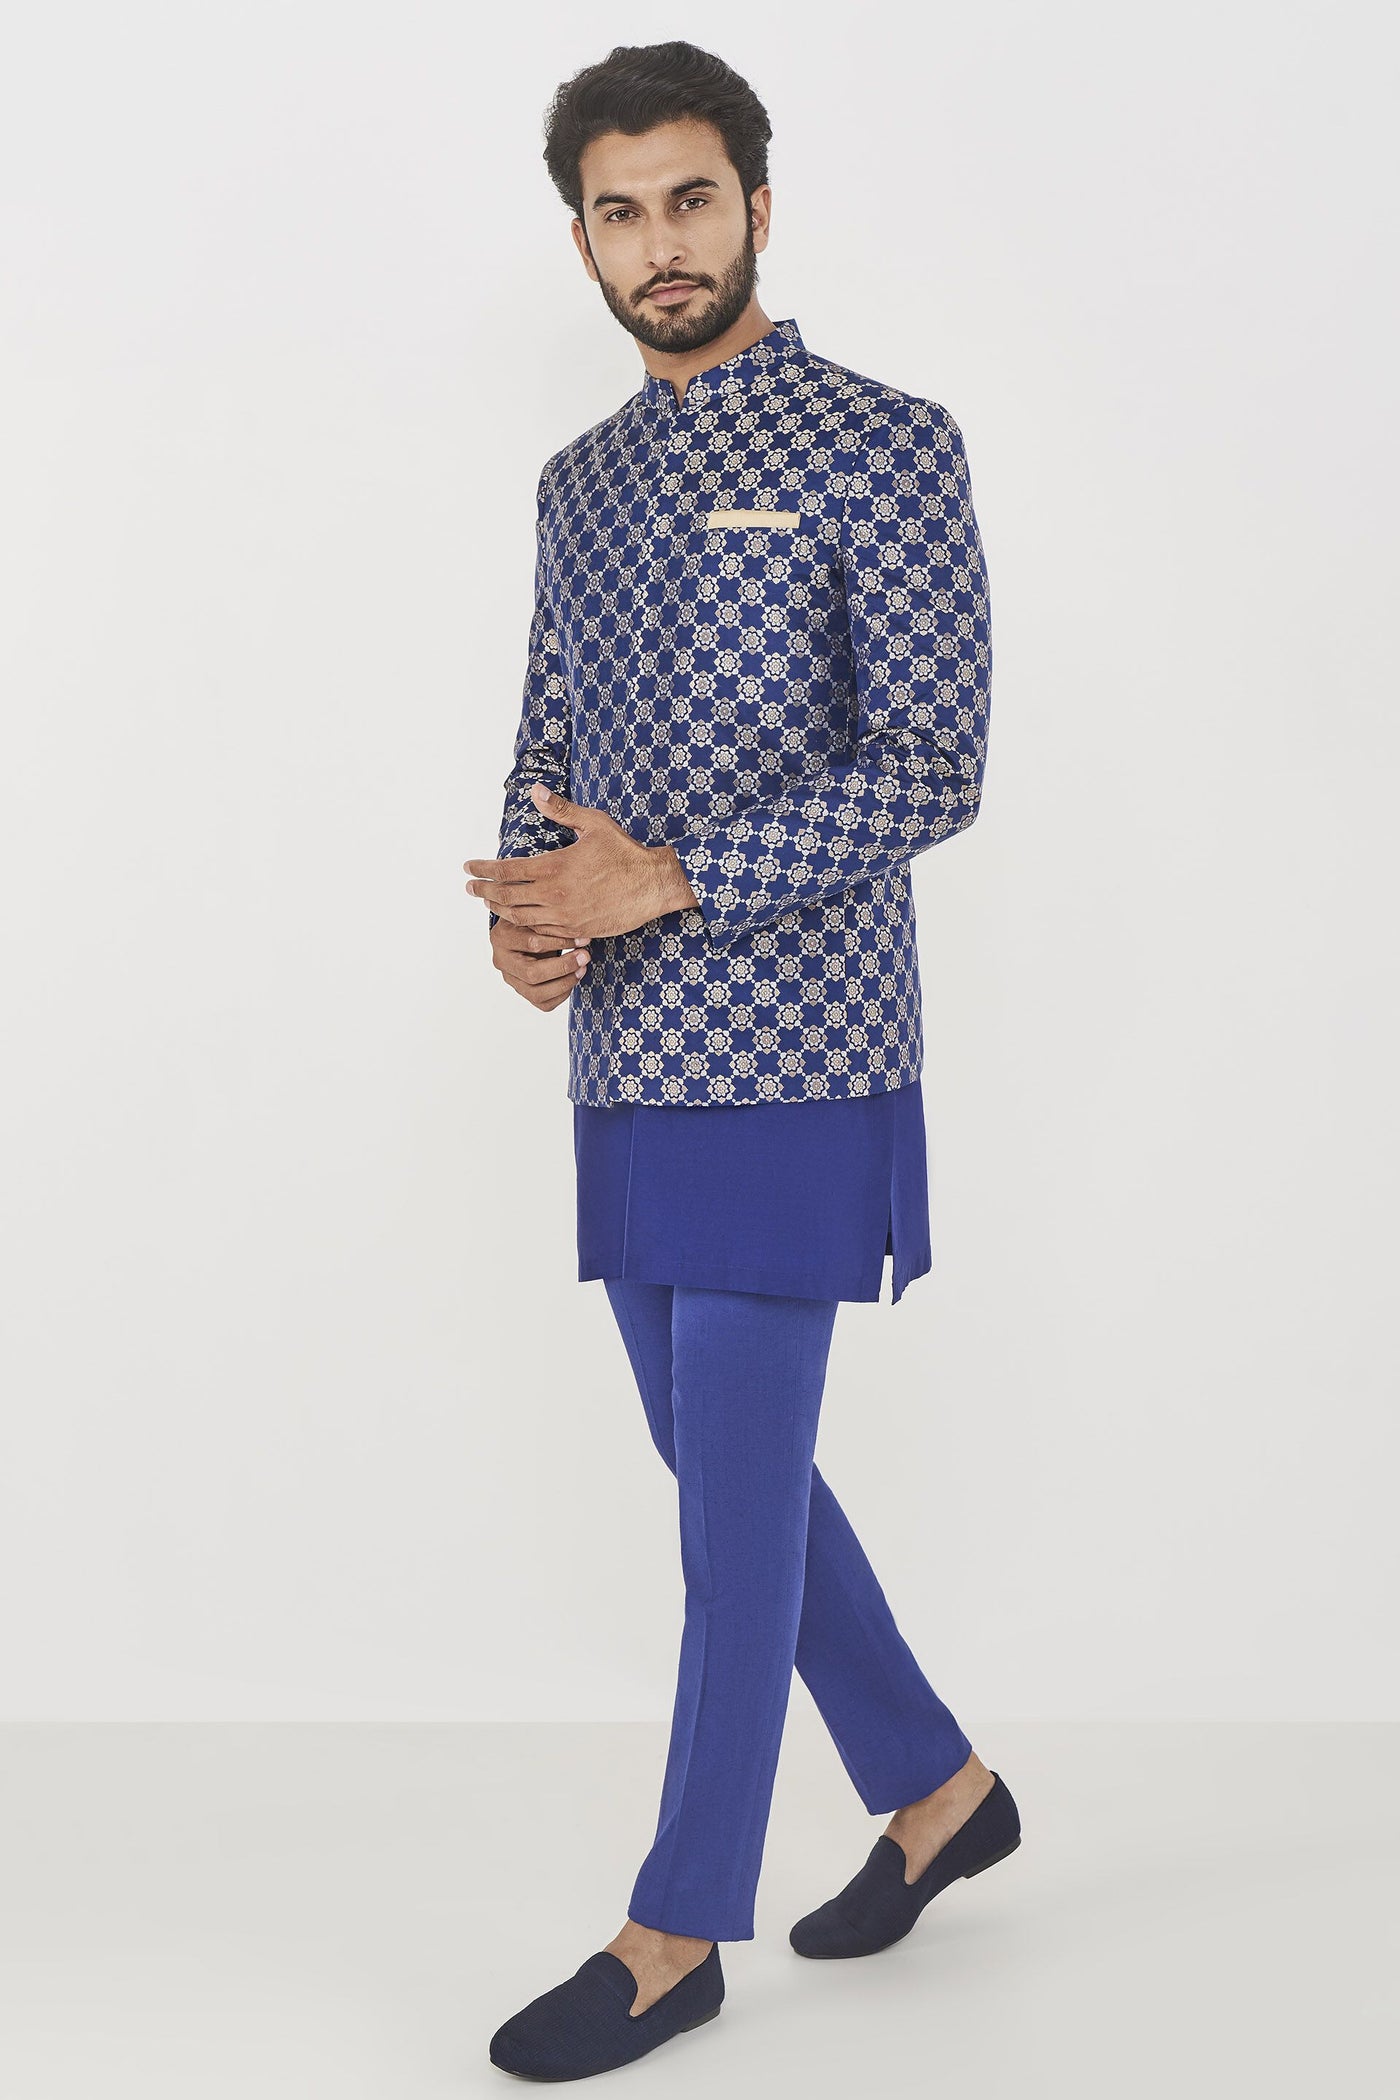 Anita Dongre menswear Purnit Bandhgala Navy indian designer wear online shopping melange singapore